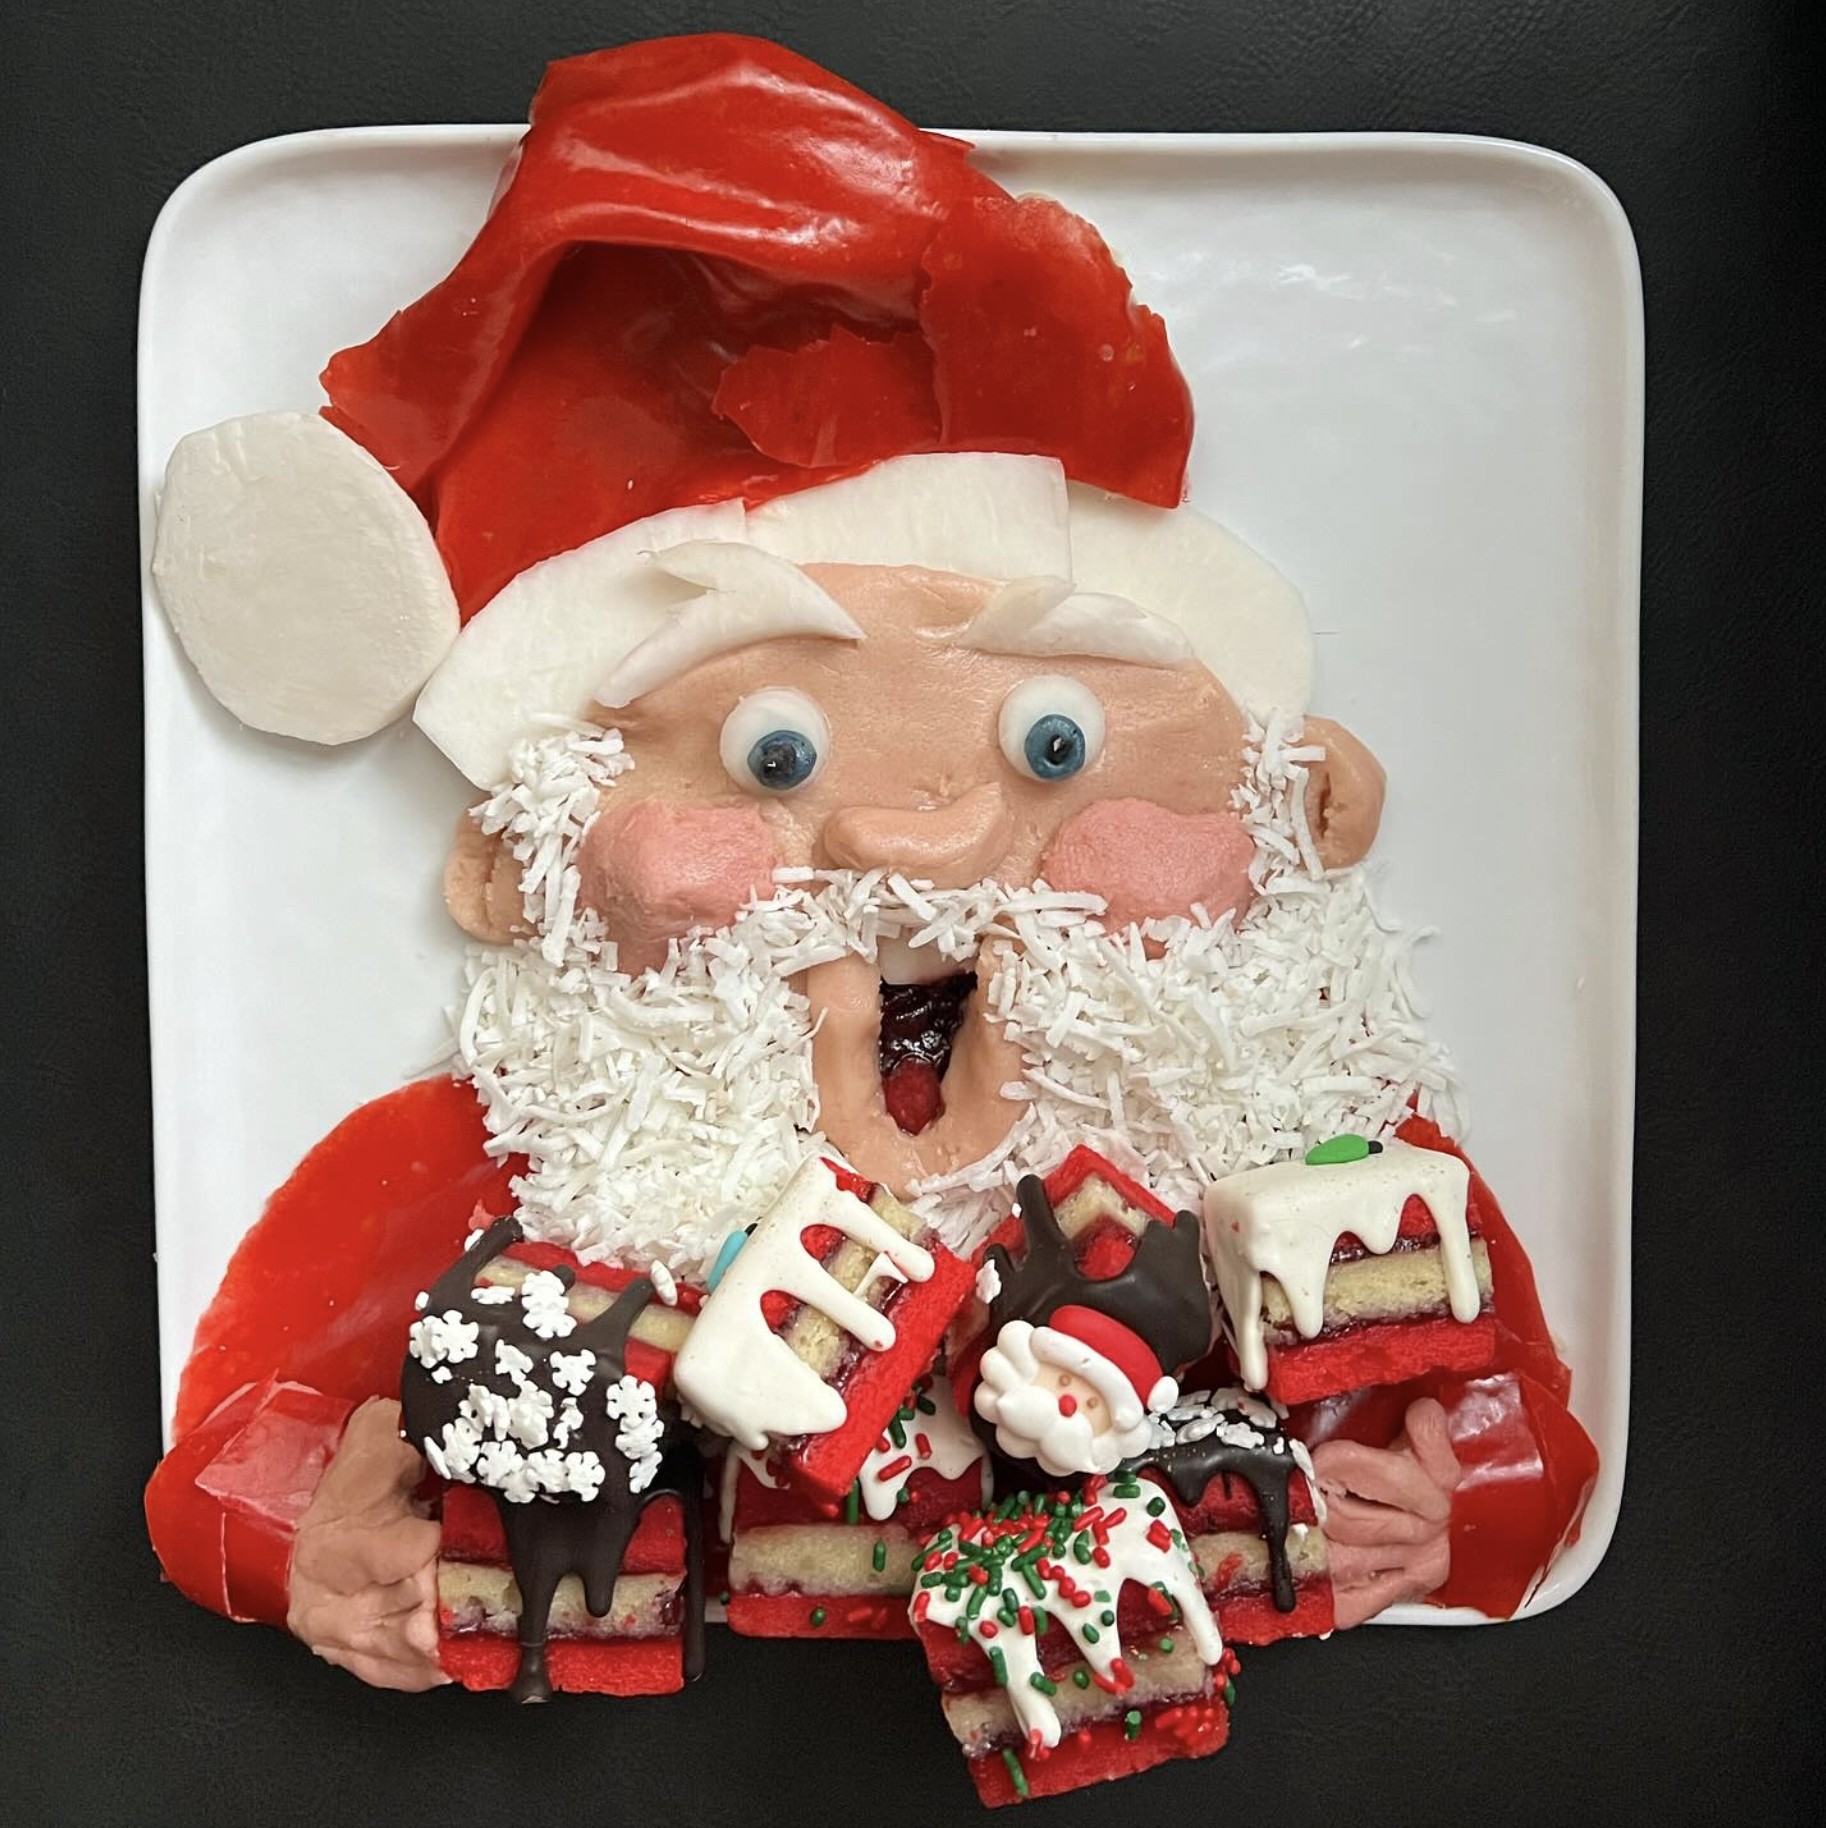 Santa made entirely of food by Harley Langberg